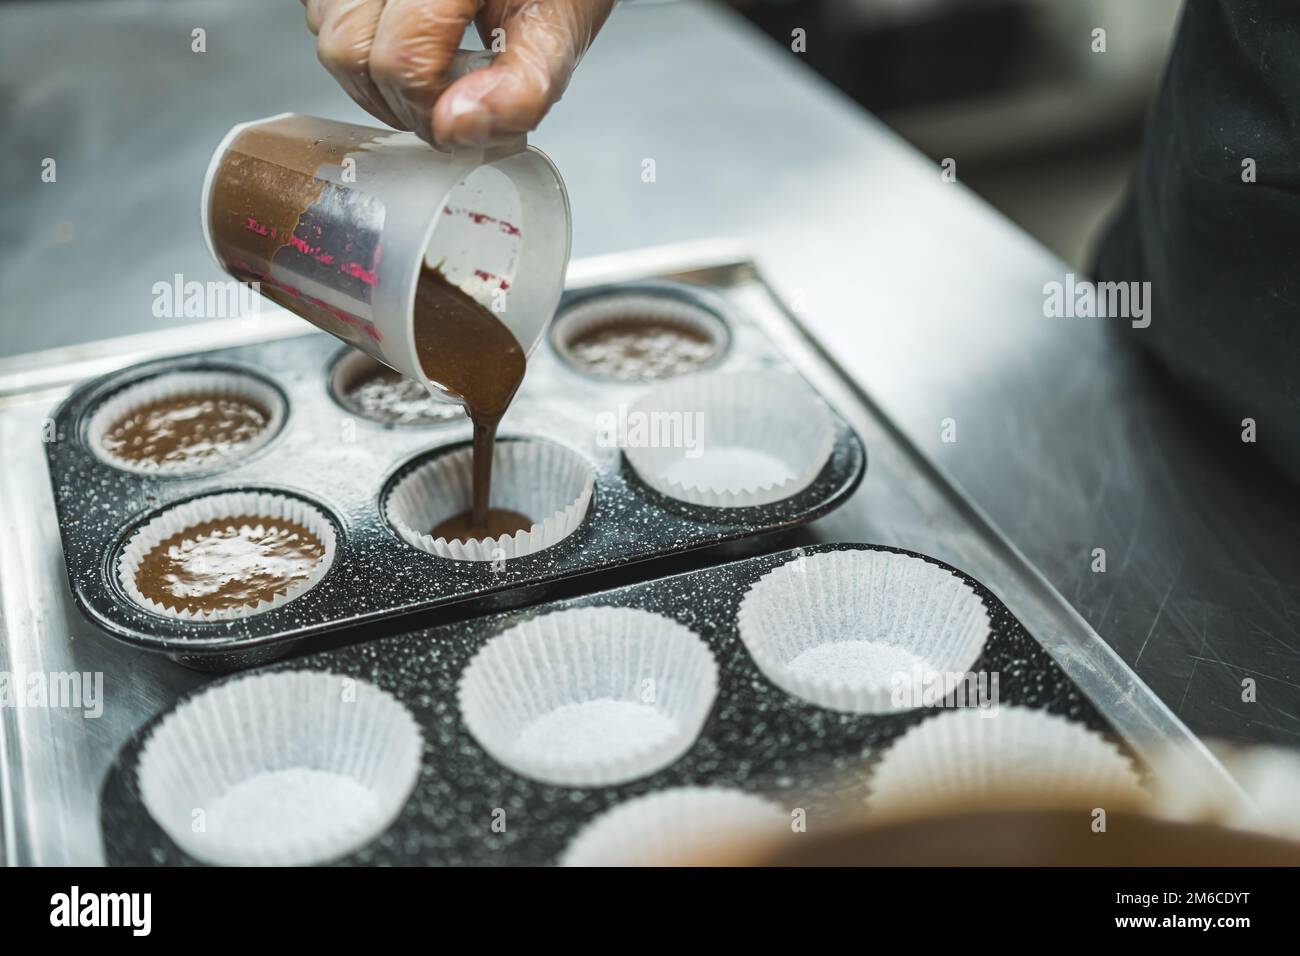 Vista laterale dell'impasto di cioccolato versato nelle fodere dei cupcake in due padelle per cupcake da un panettiere che indossa un guanto trasparente. Foto di alta qualità Foto Stock